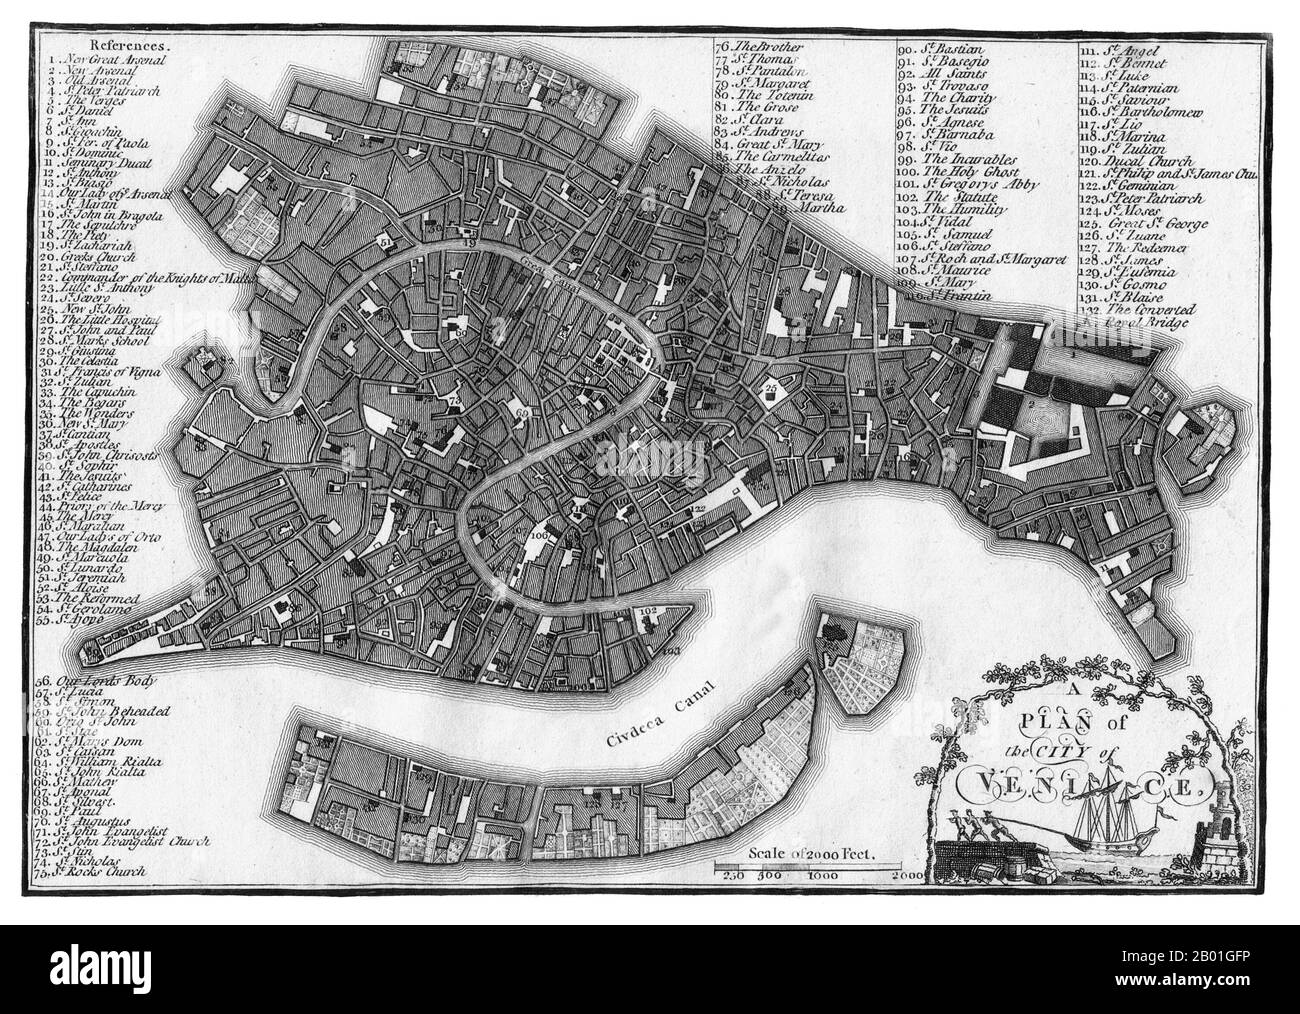 Italien/Venedig: Eine Karte von Venedig, veröffentlicht von J. Stockdale, London, 1800. Jahrhundertelang war Venedig Europas wichtigster Handelspartner im Nahen Osten und insbesondere im Byzantinischen Reich. Die venezianische Marine- und Handelsmacht war in Europa einzigartig, bis sie im 15. Jahrhundert eine Reihe von Kriegen gegen die osmanischen Armeen verlor. Die Stadt verlor in den Jahren 1575 bis 1577 etwa 50.000 Menschen durch den Schwarzen Tod, blieb aber bis weit ins 18. Jahrhundert ein wichtiges Fertigungszentrum und Hafen. Stockfoto